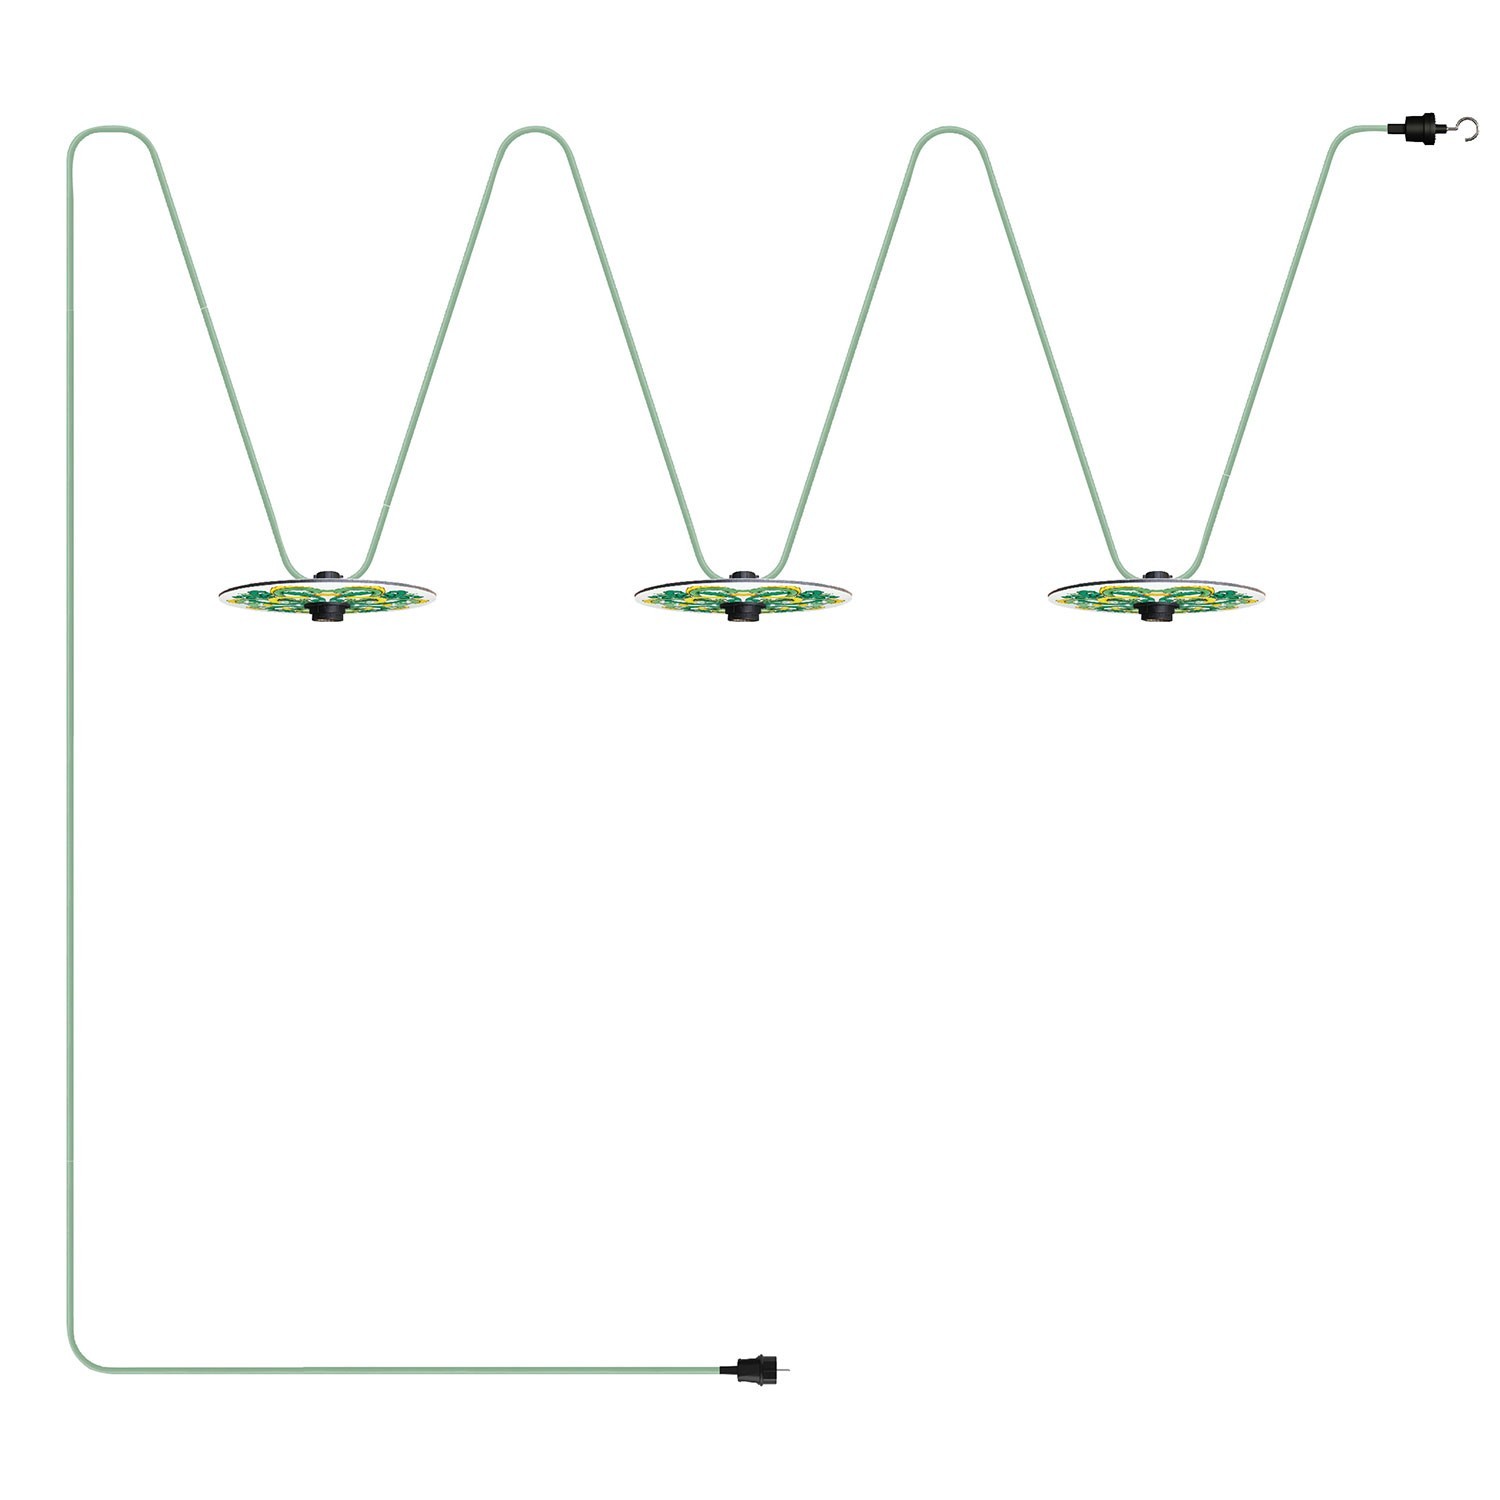 Maioliche' String Light Lumet System fra 10 m med stofkabel, 3 lampeholdere og lampeskærme, krog og sort stik